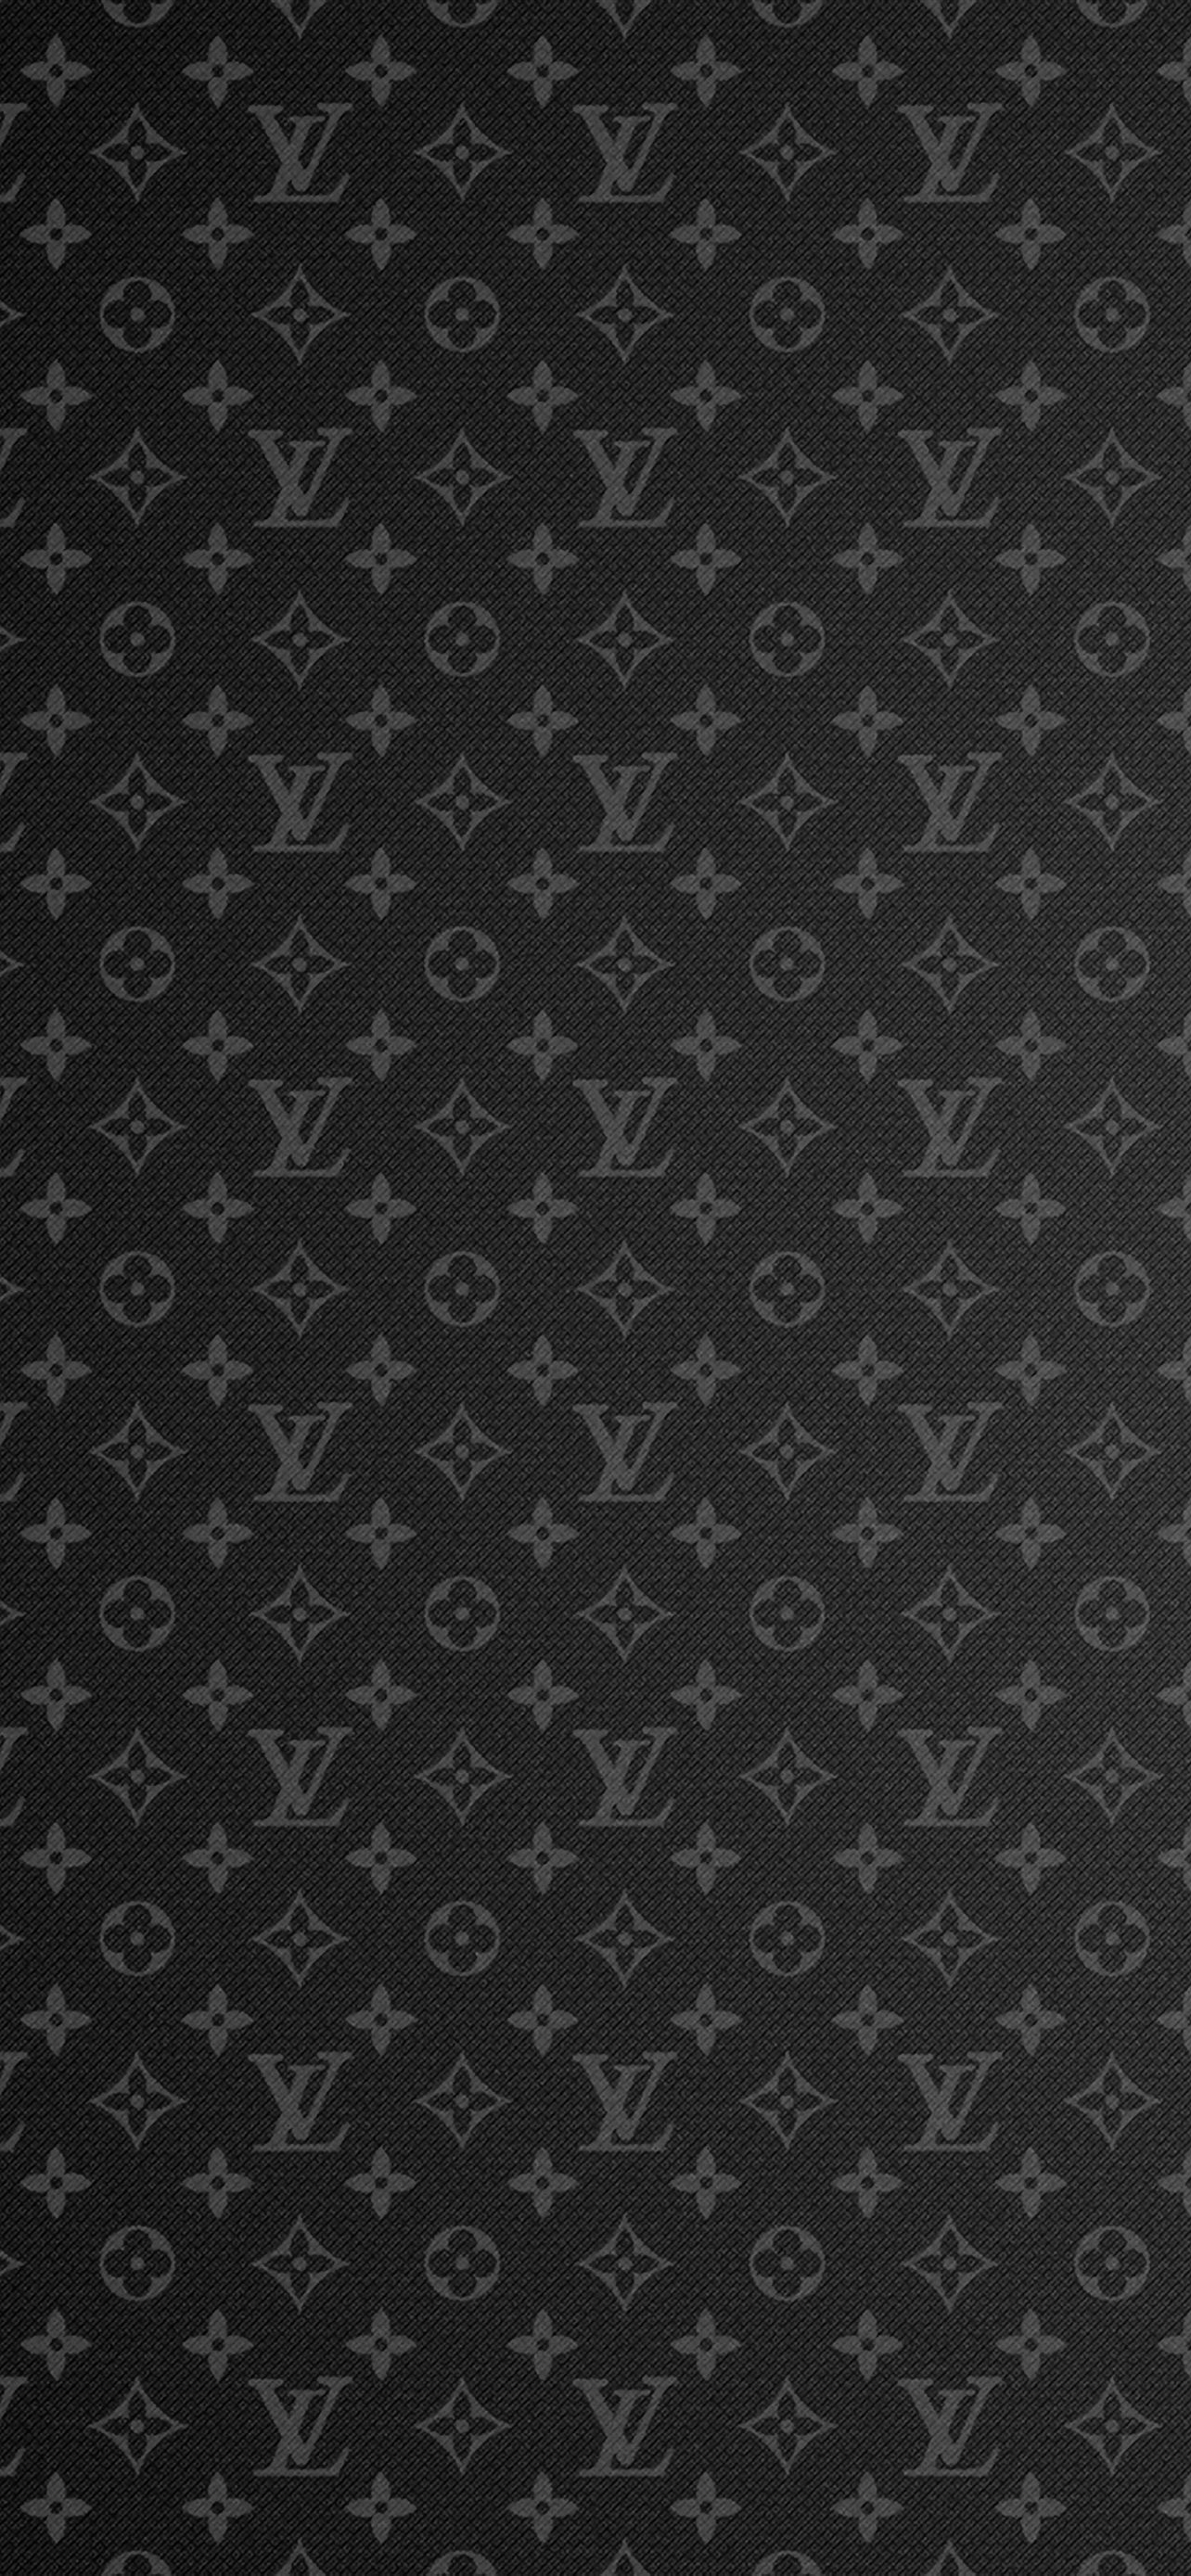 Louis Vuitton Golden Logo Ultra HD Desktop Background Wallpaper for 4K UHD  TV  Widescreen  UltraWide Desktop  Laptop  Tablet  Smartphone